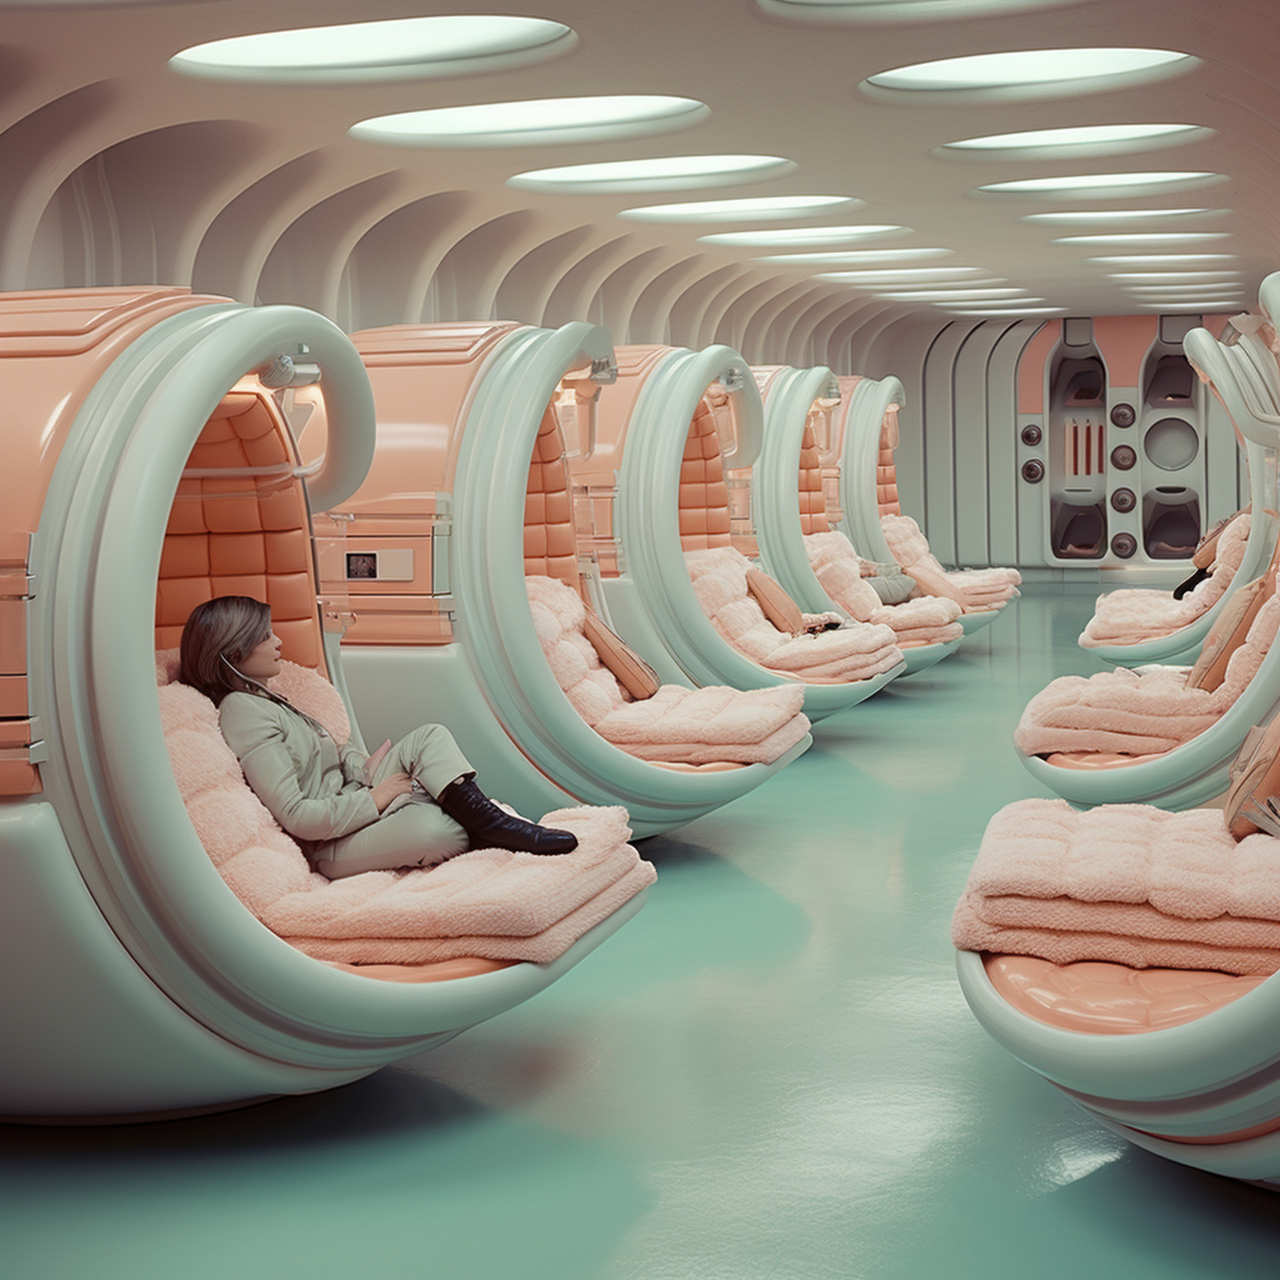 欢迎来到未来太空舱,这里是通往未来最快捷的交通工具,请您坐稳扶好